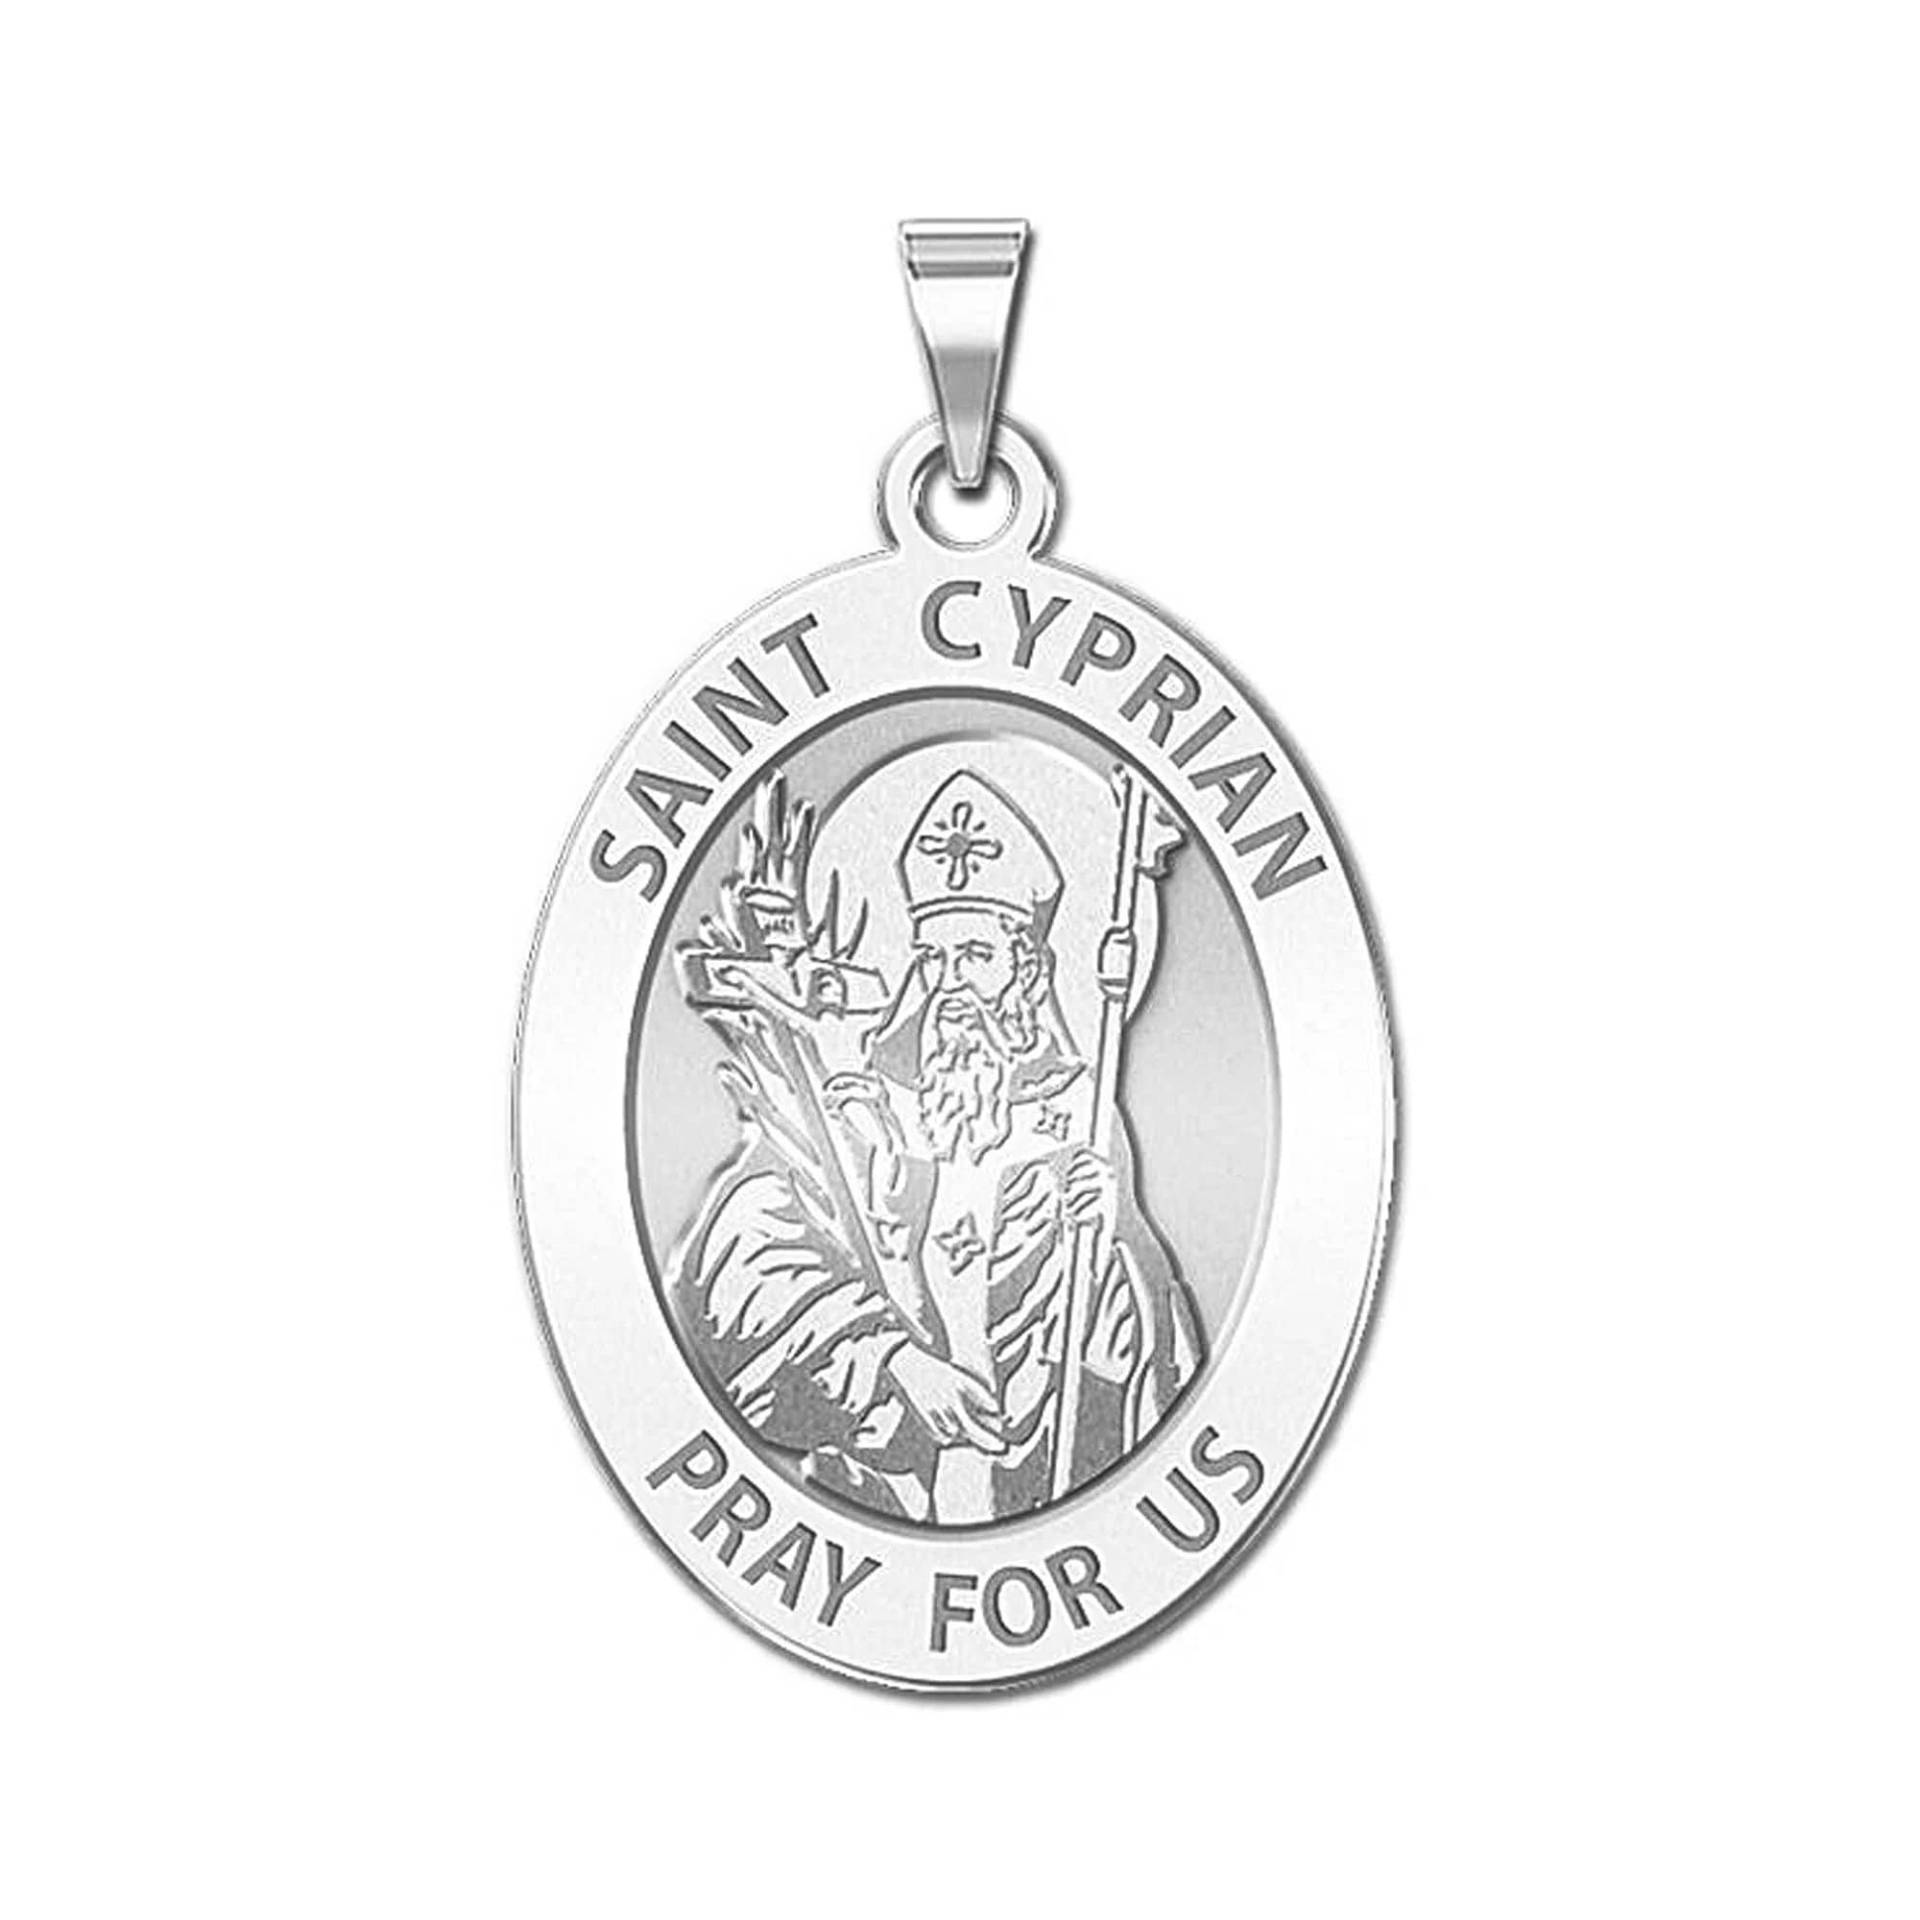 Heiliger Cyprian Oval Religiöse Medaille von CustomizeTheCharms